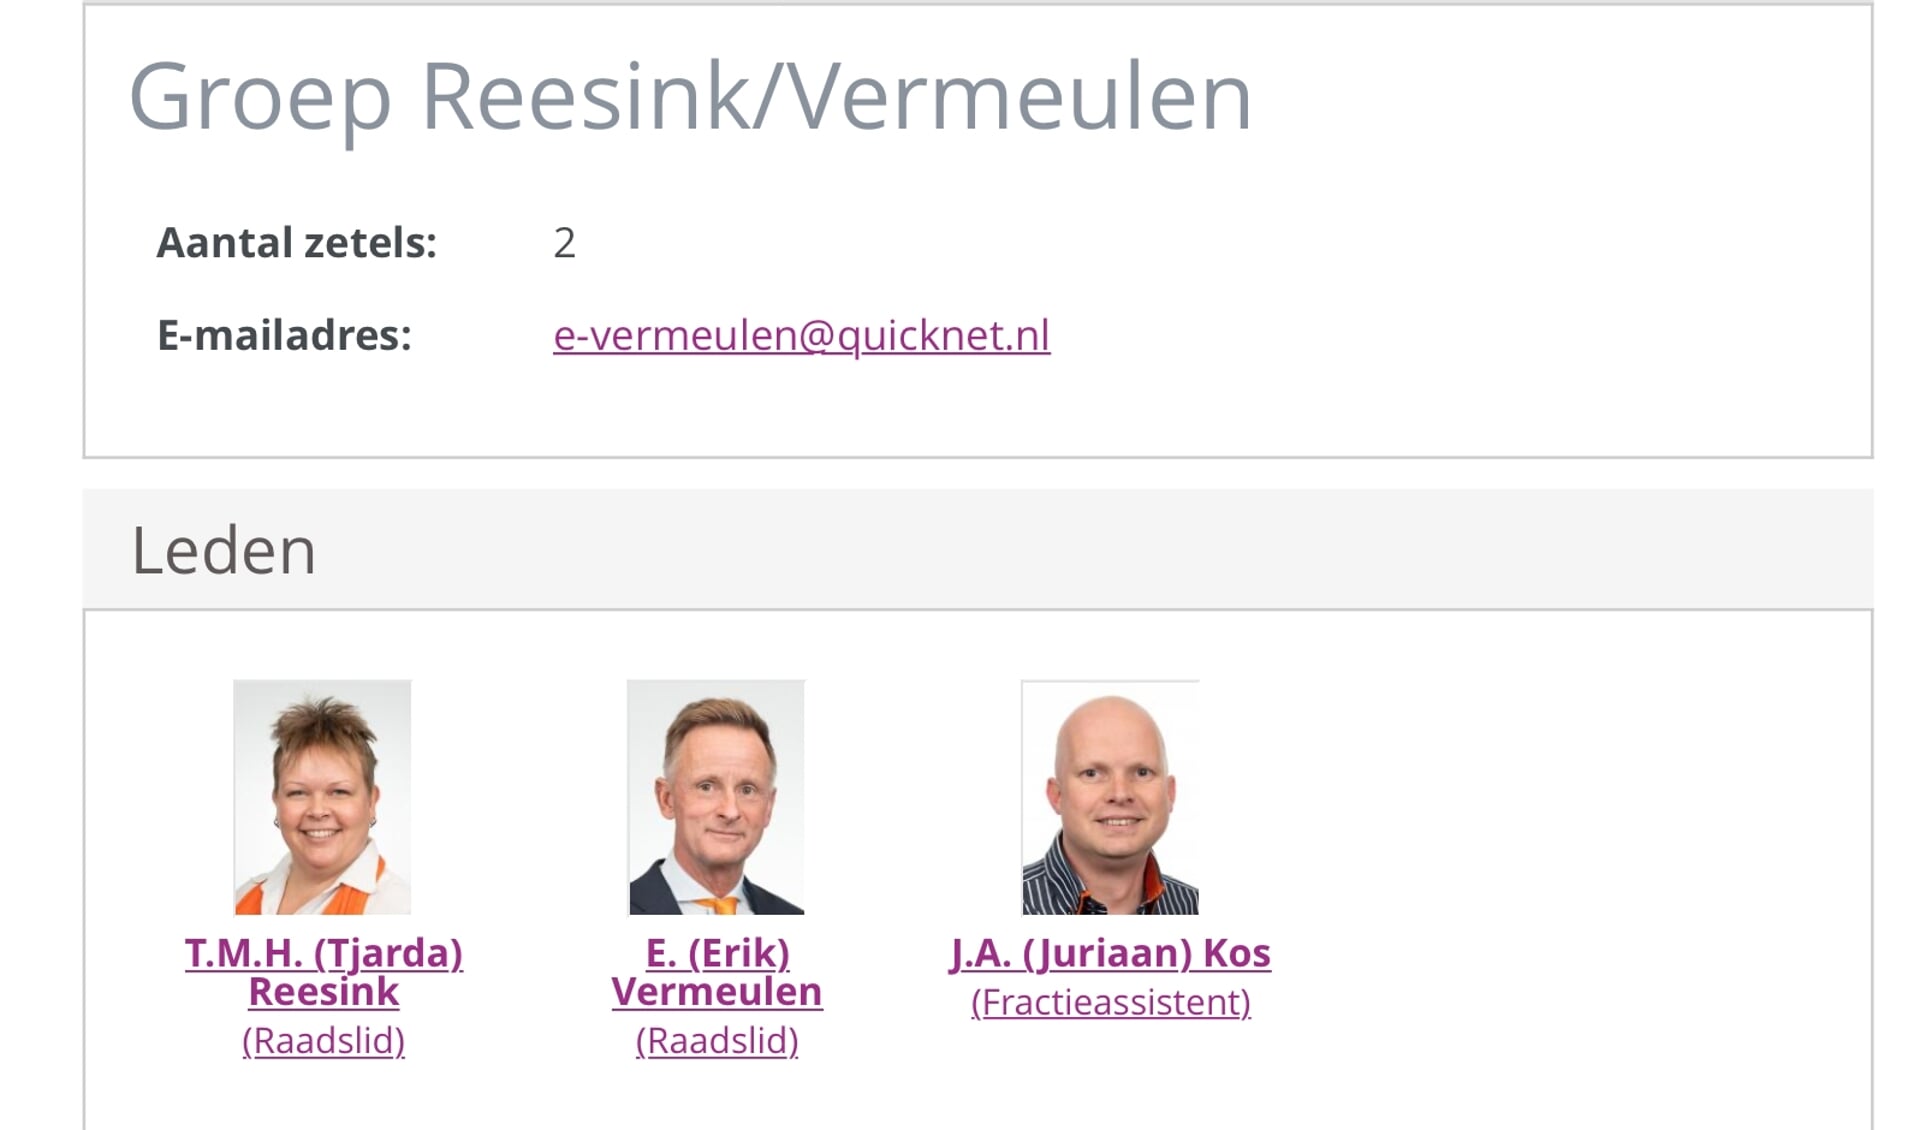 De groep Reesink/Vermeulen wordt al op gemeentepagina getoond. 